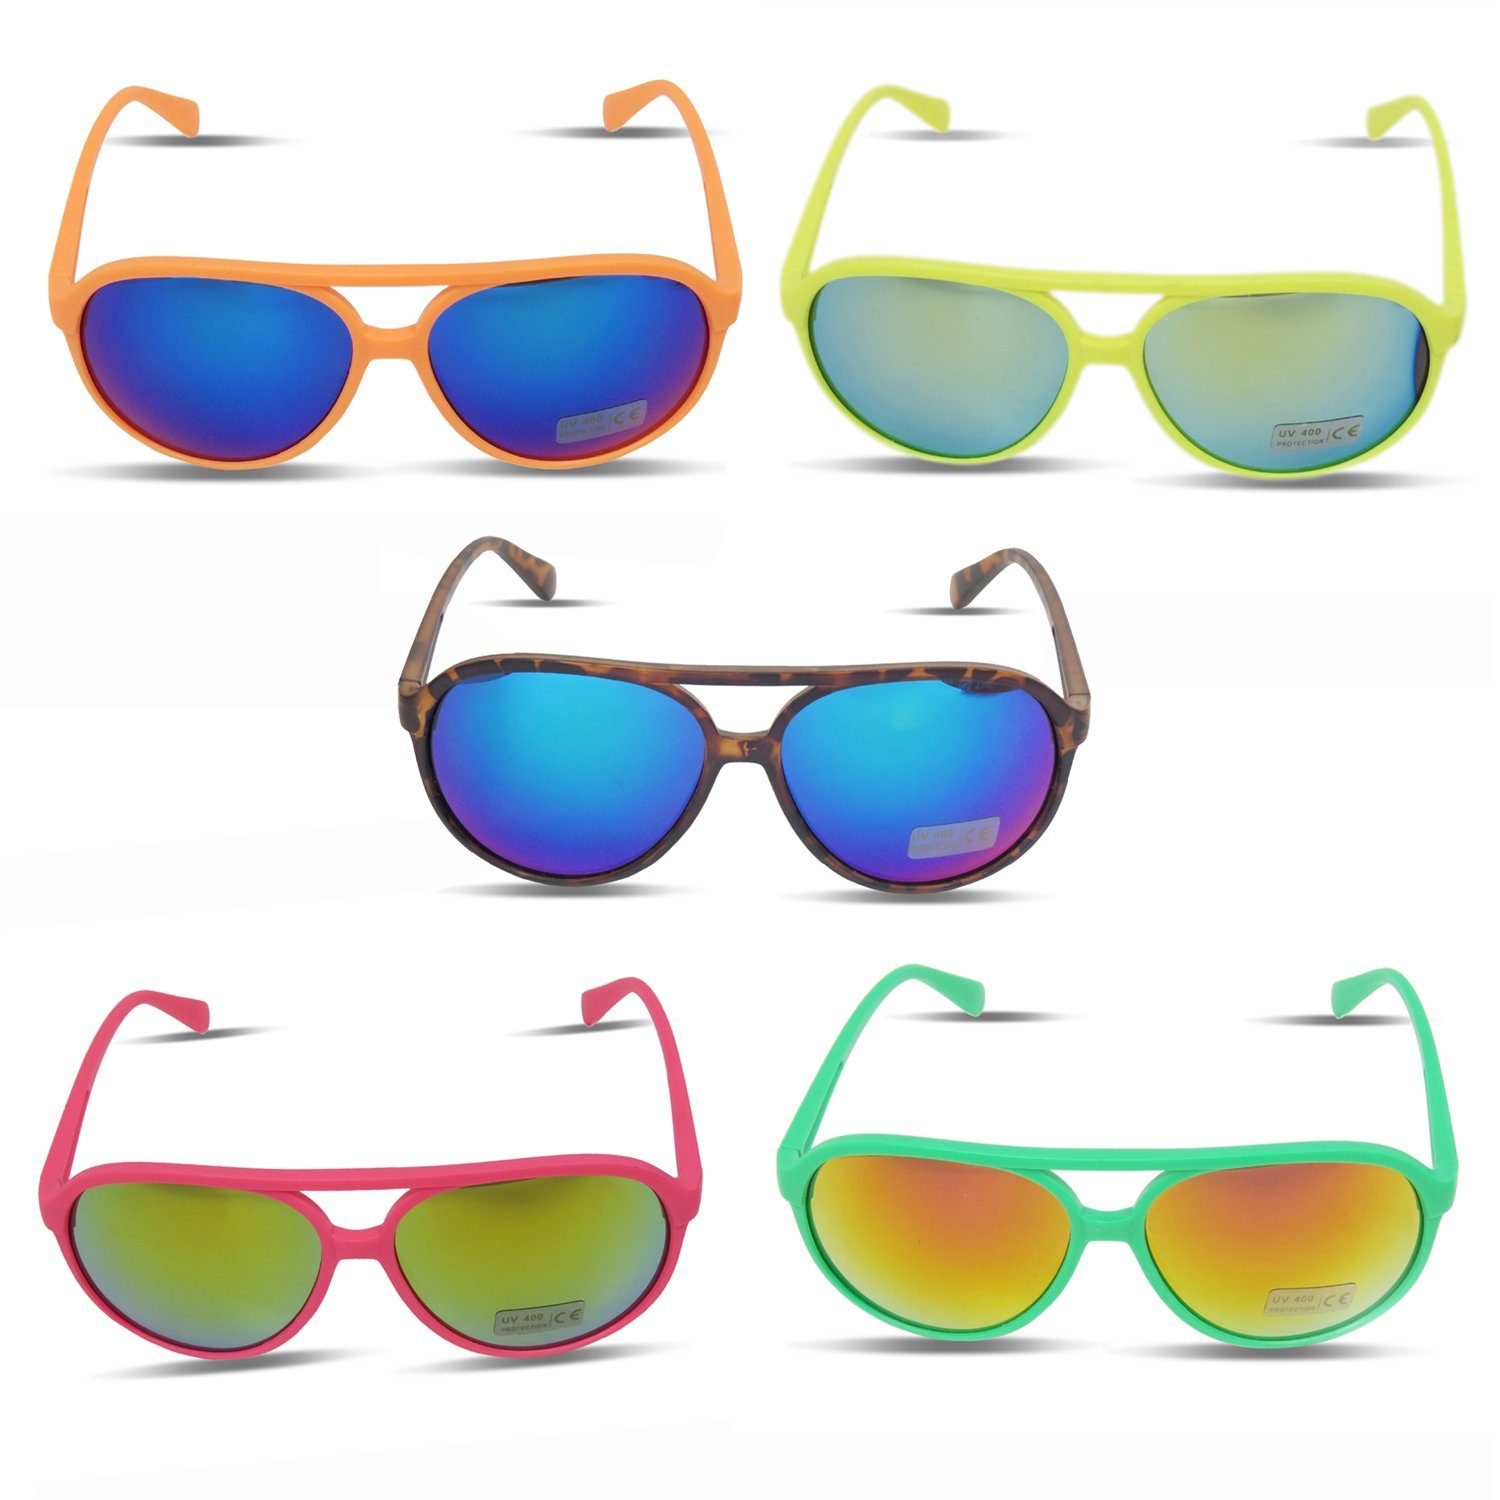 Originelli Sonnenbrille Fun Brille Verspiegelt Knallig Verspiegelt Sonnenbrille Gläser: Onesize, Sonia Neon leo